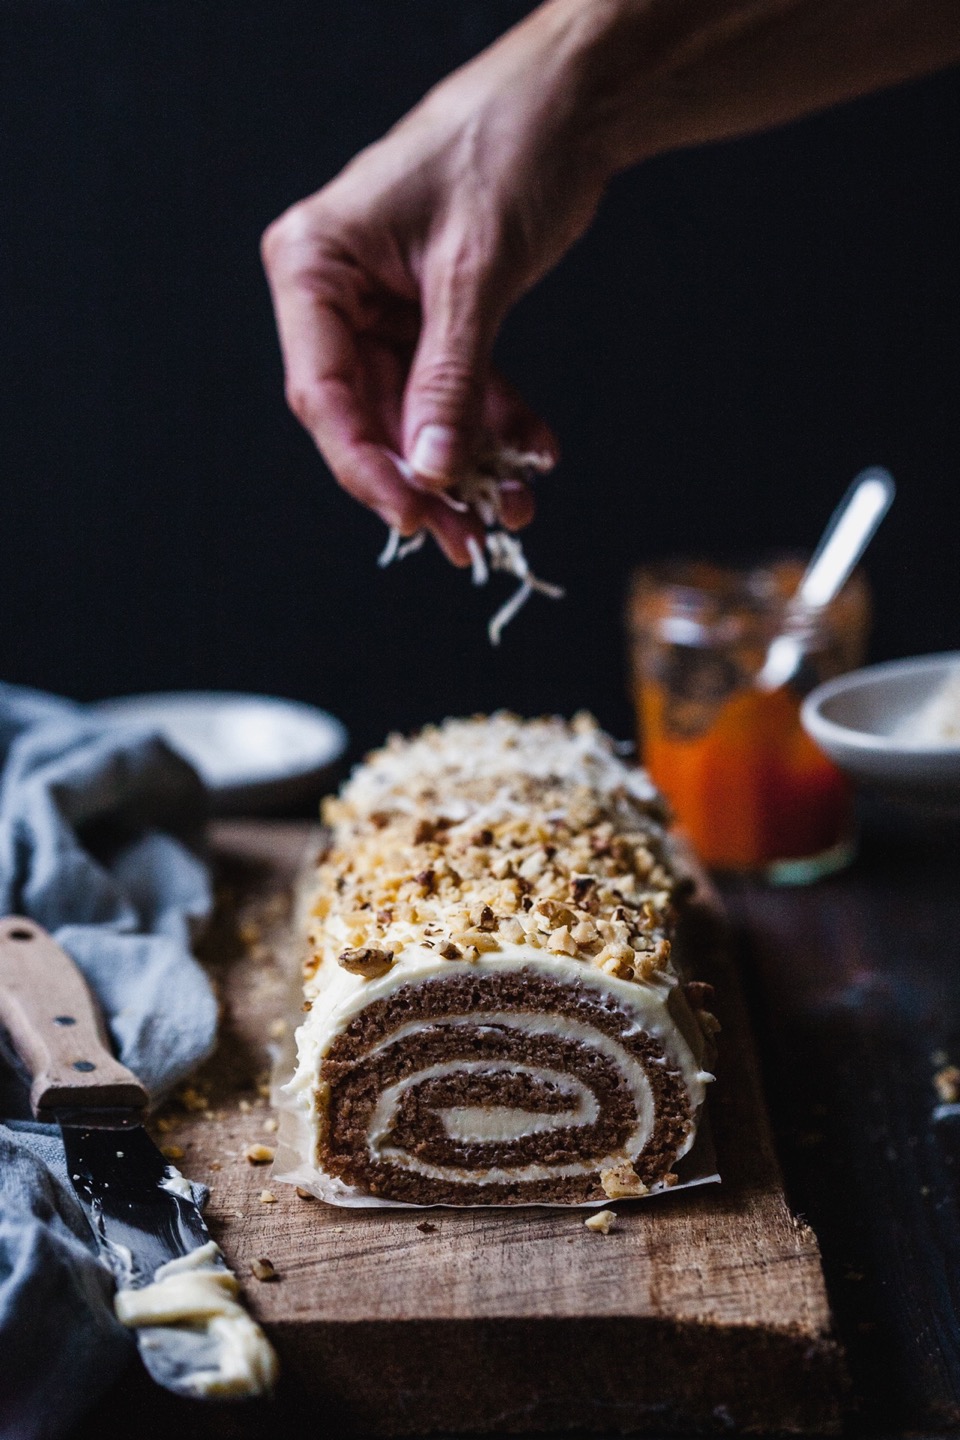 Carrot Cake Roll